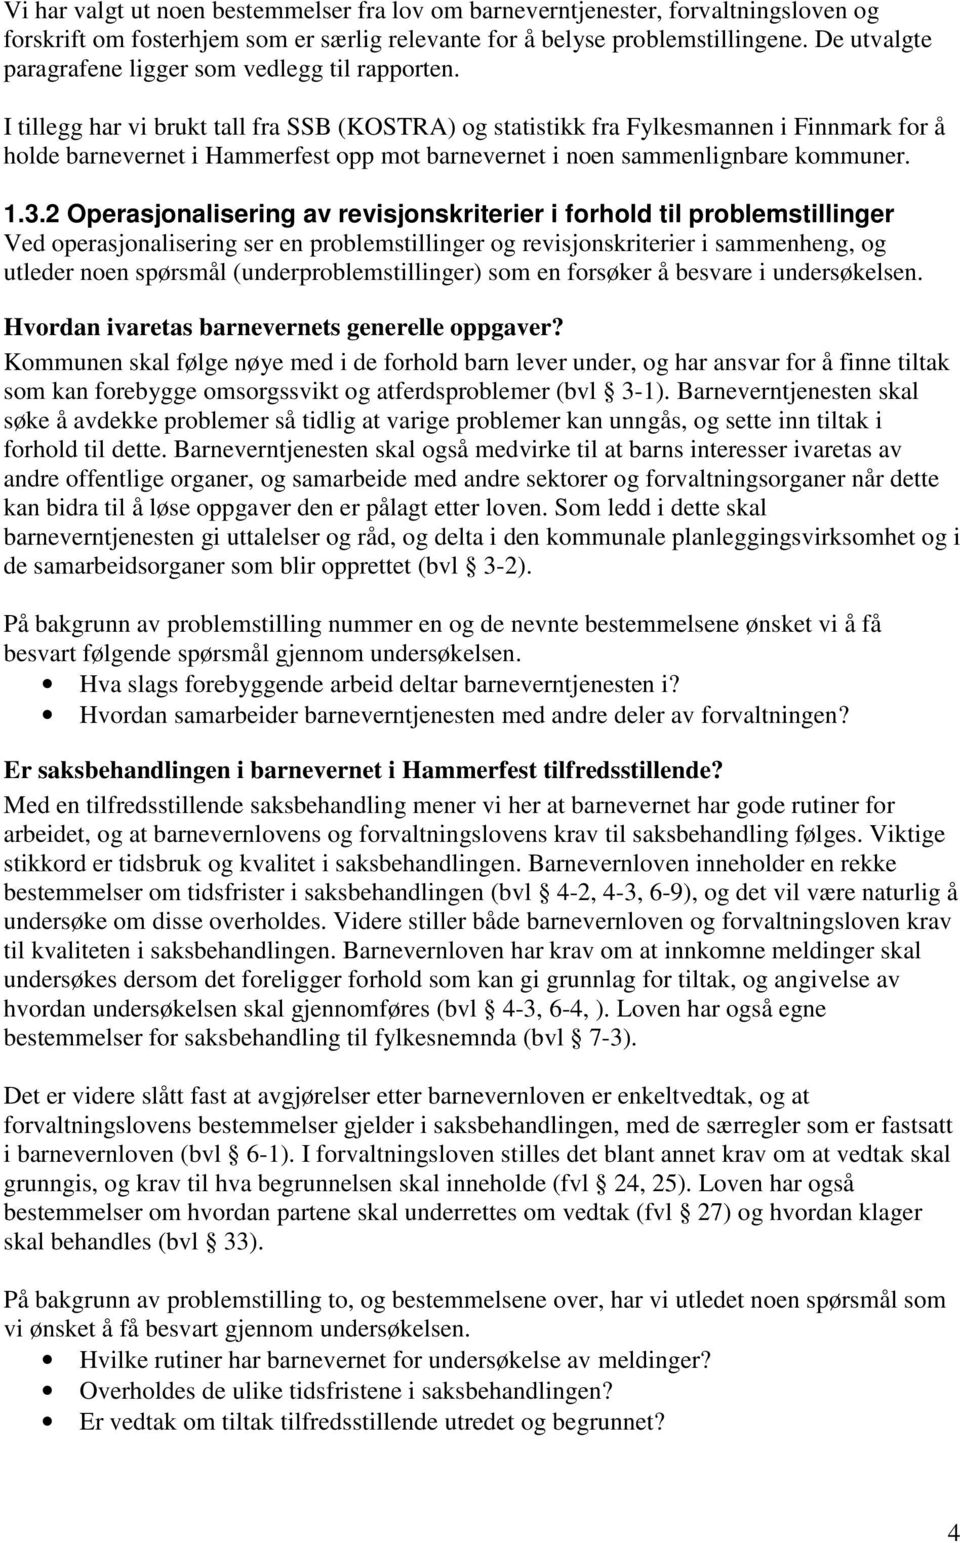 I tillegg har vi brukt tall fra SSB (KOSTRA) og statistikk fra Fylkesmannen i Finnmark for å holde barnevernet i Hammerfest opp mot barnevernet i noen sammenlignbare kommuner. 1.3.